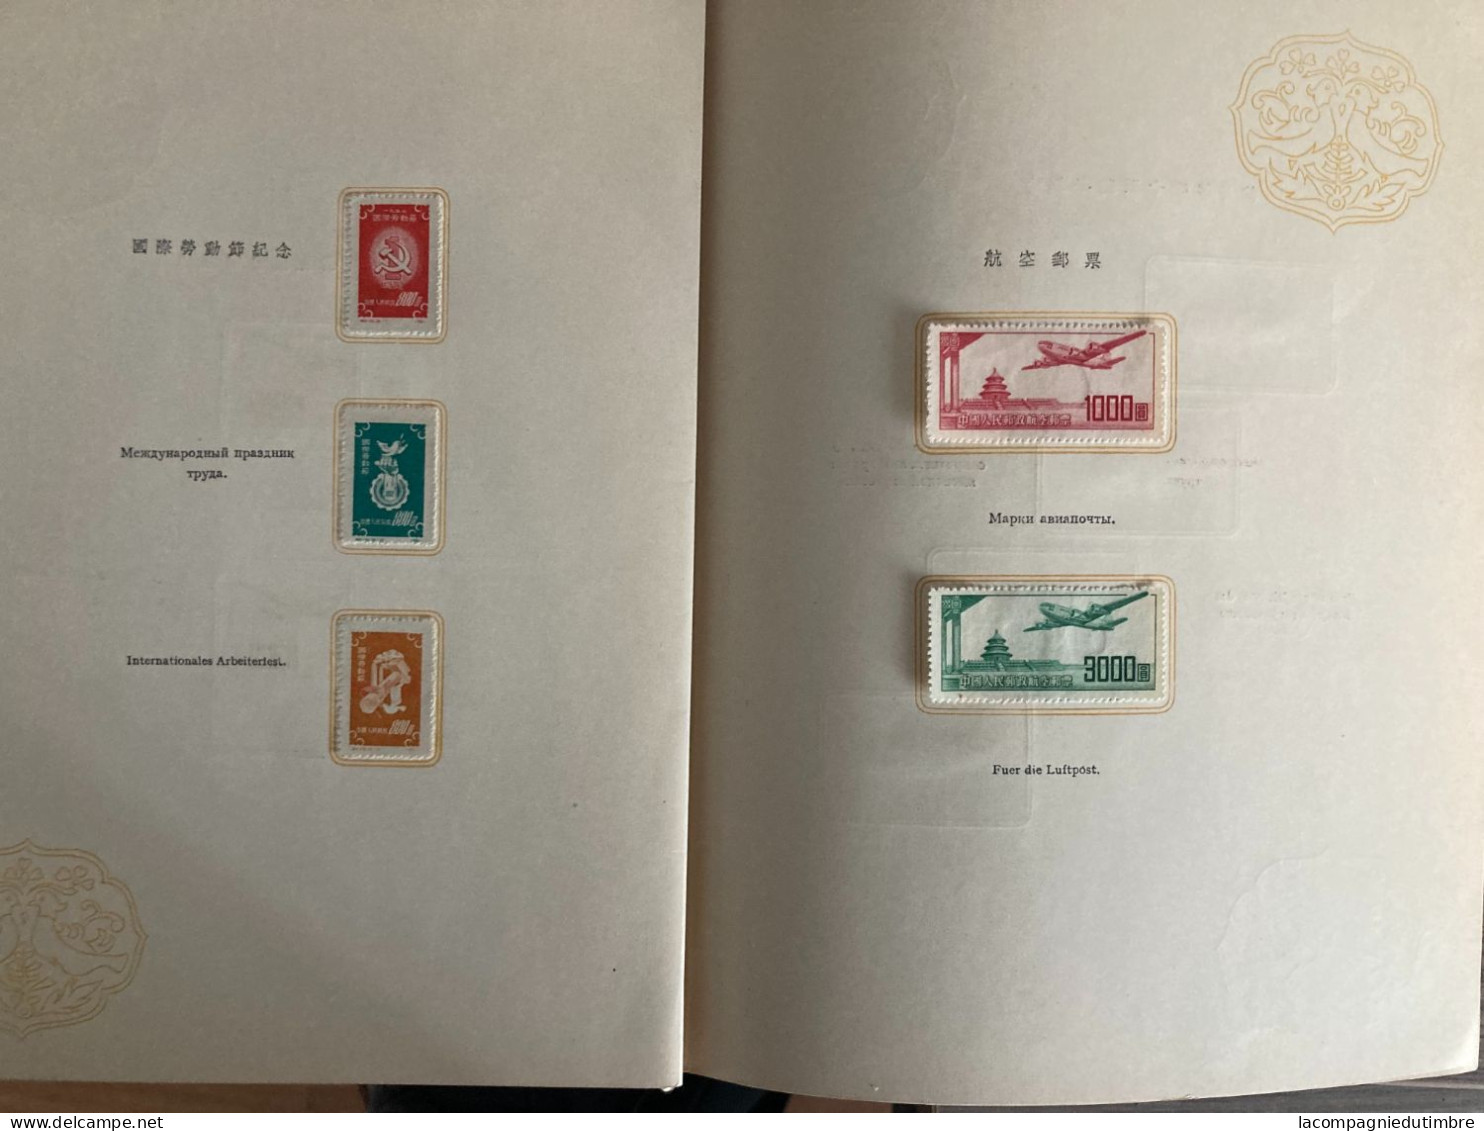 Chine/China très beau livret avec séries complètes période 1949/1953. TB